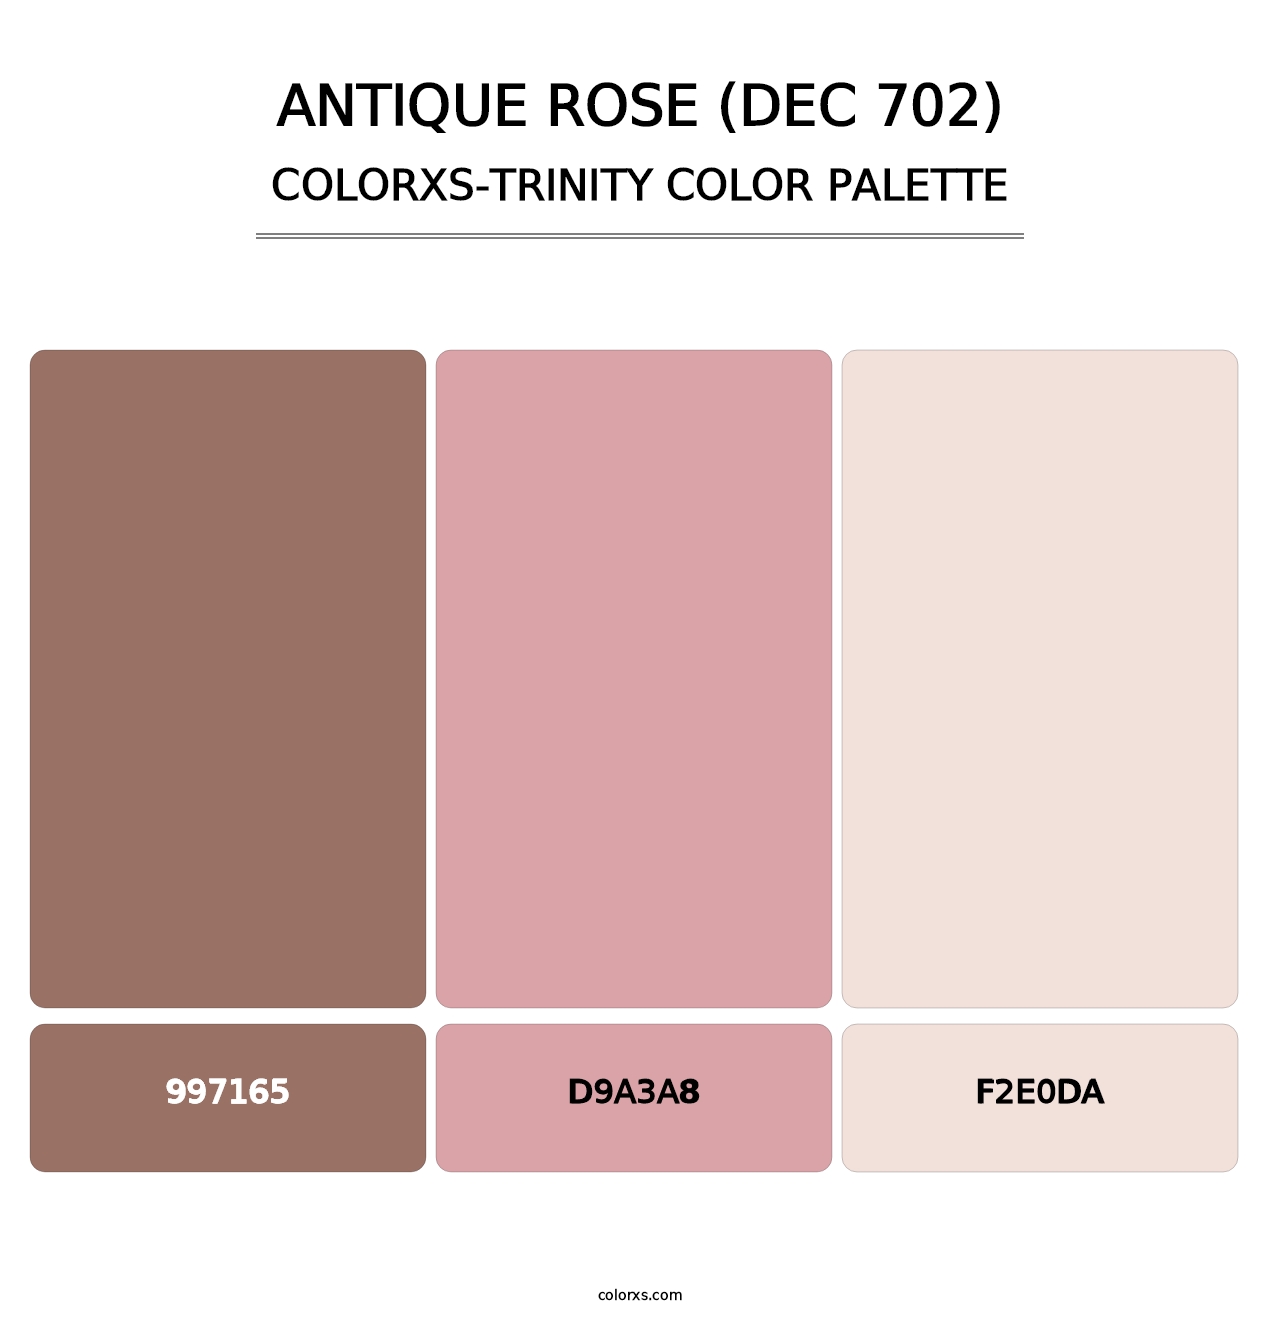 Antique Rose (DEC 702) - Colorxs Trinity Palette